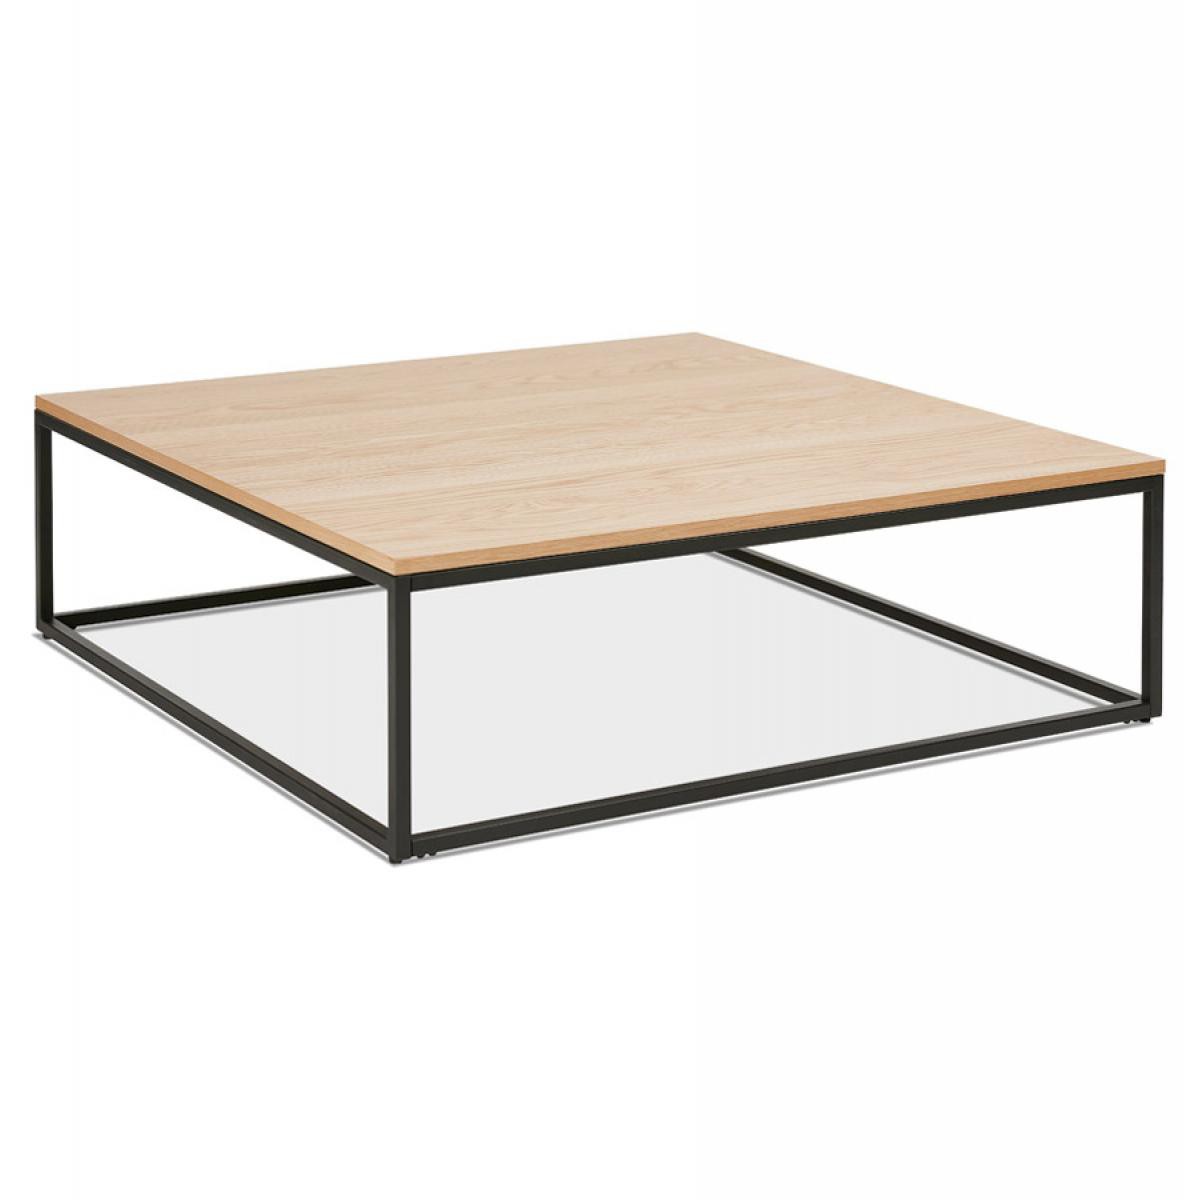 Alterego - Grande table basse style industriel 'TRIBECA' en bois finition naturelle et métal noir - Tables basses